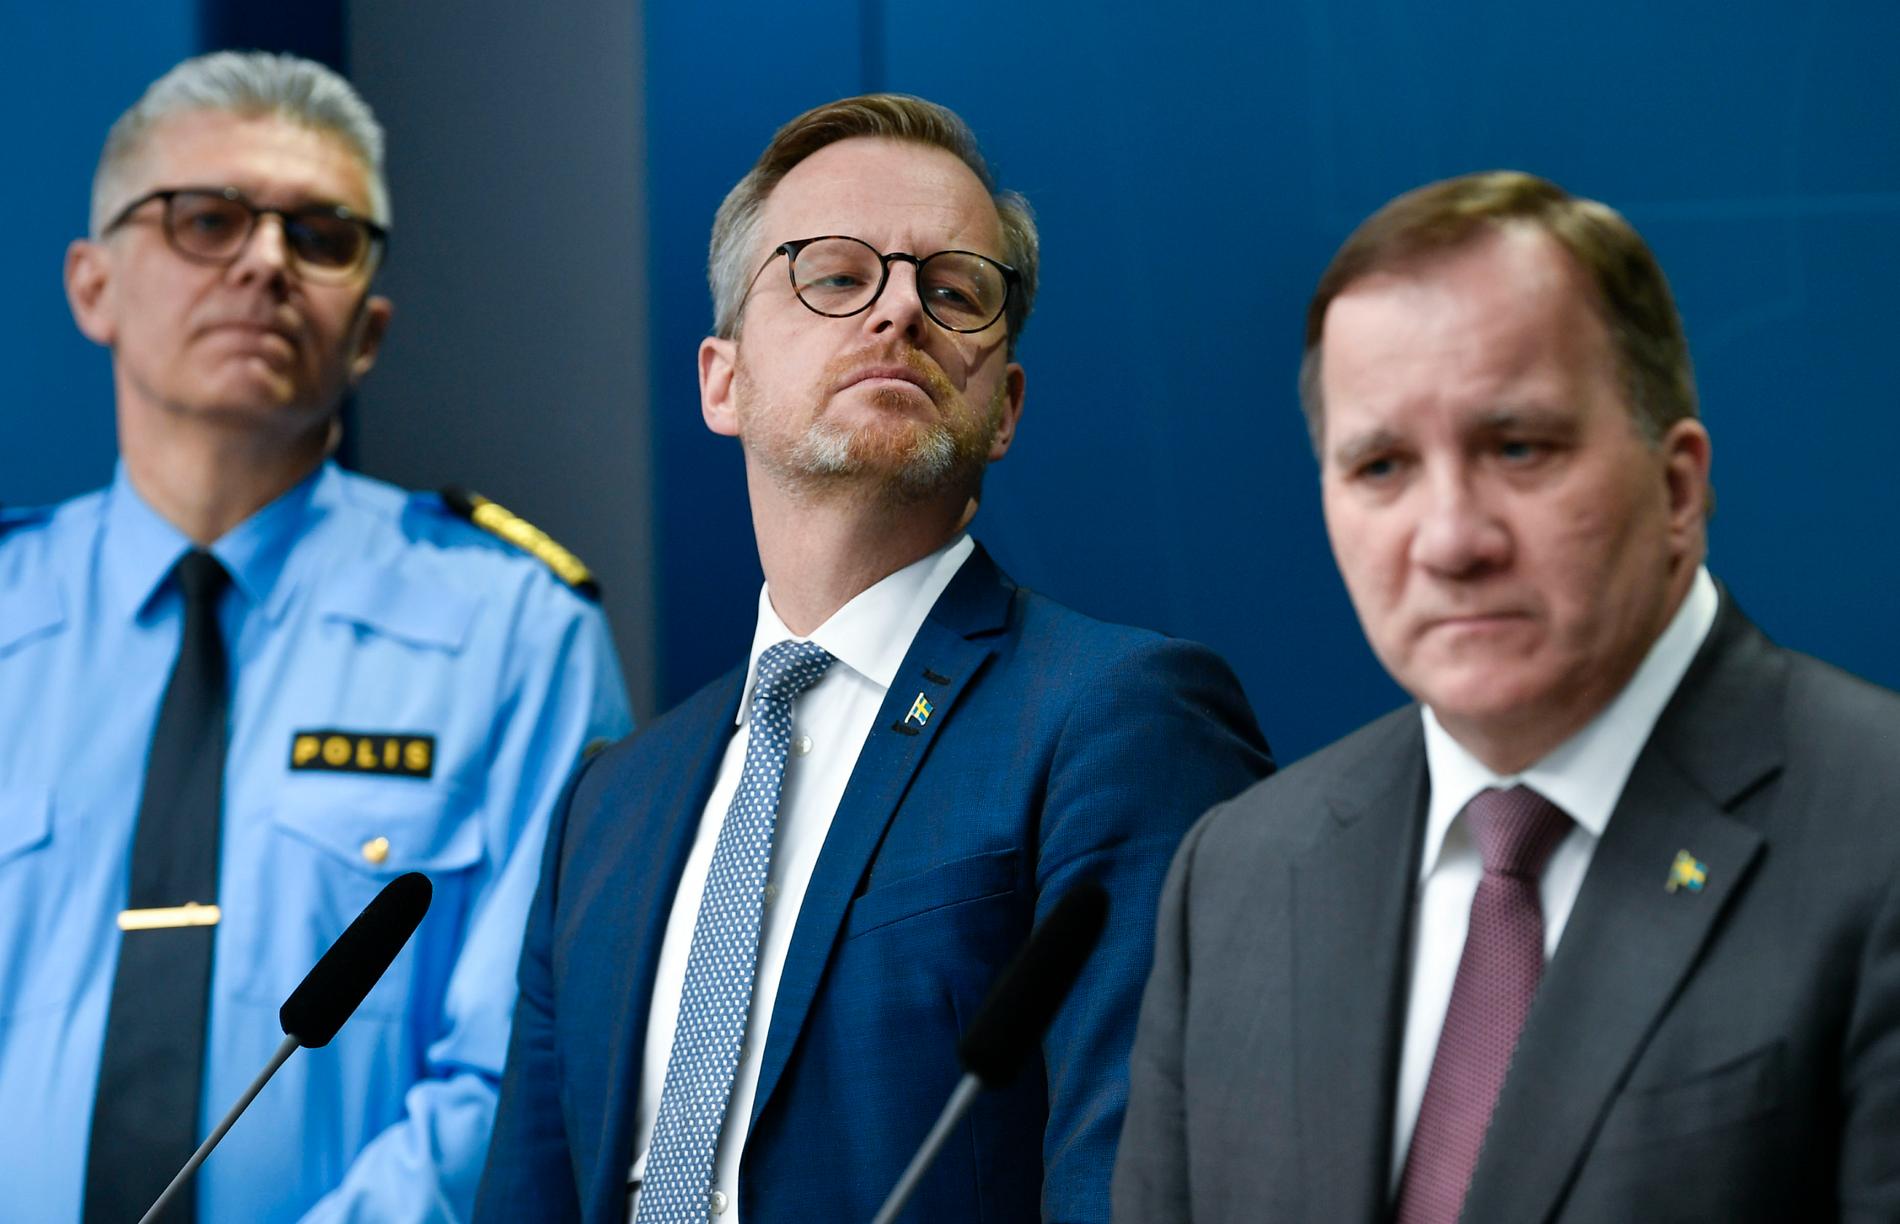 Rikspolischef Anders Thornberg, Inrikesminister Mikael Damberg, och statsminister Stefan Löfven under pressträffen där de berättade om den nya förordningen.